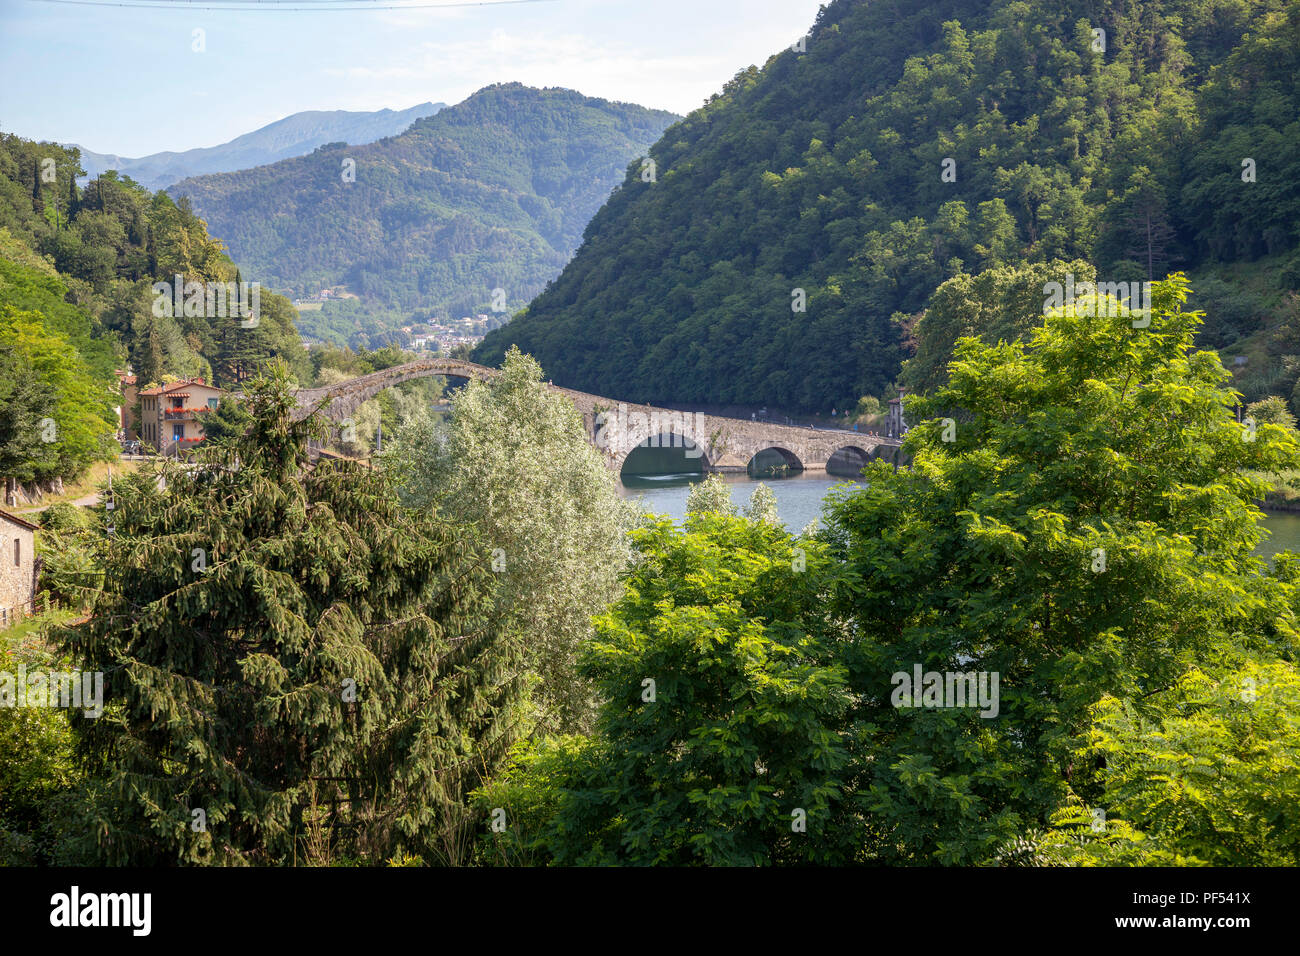 L'étrange cinq-pont en arc de Borgo a Mozzano (Toscane - Italie) construit sur la rivière Serchio. Banque D'Images